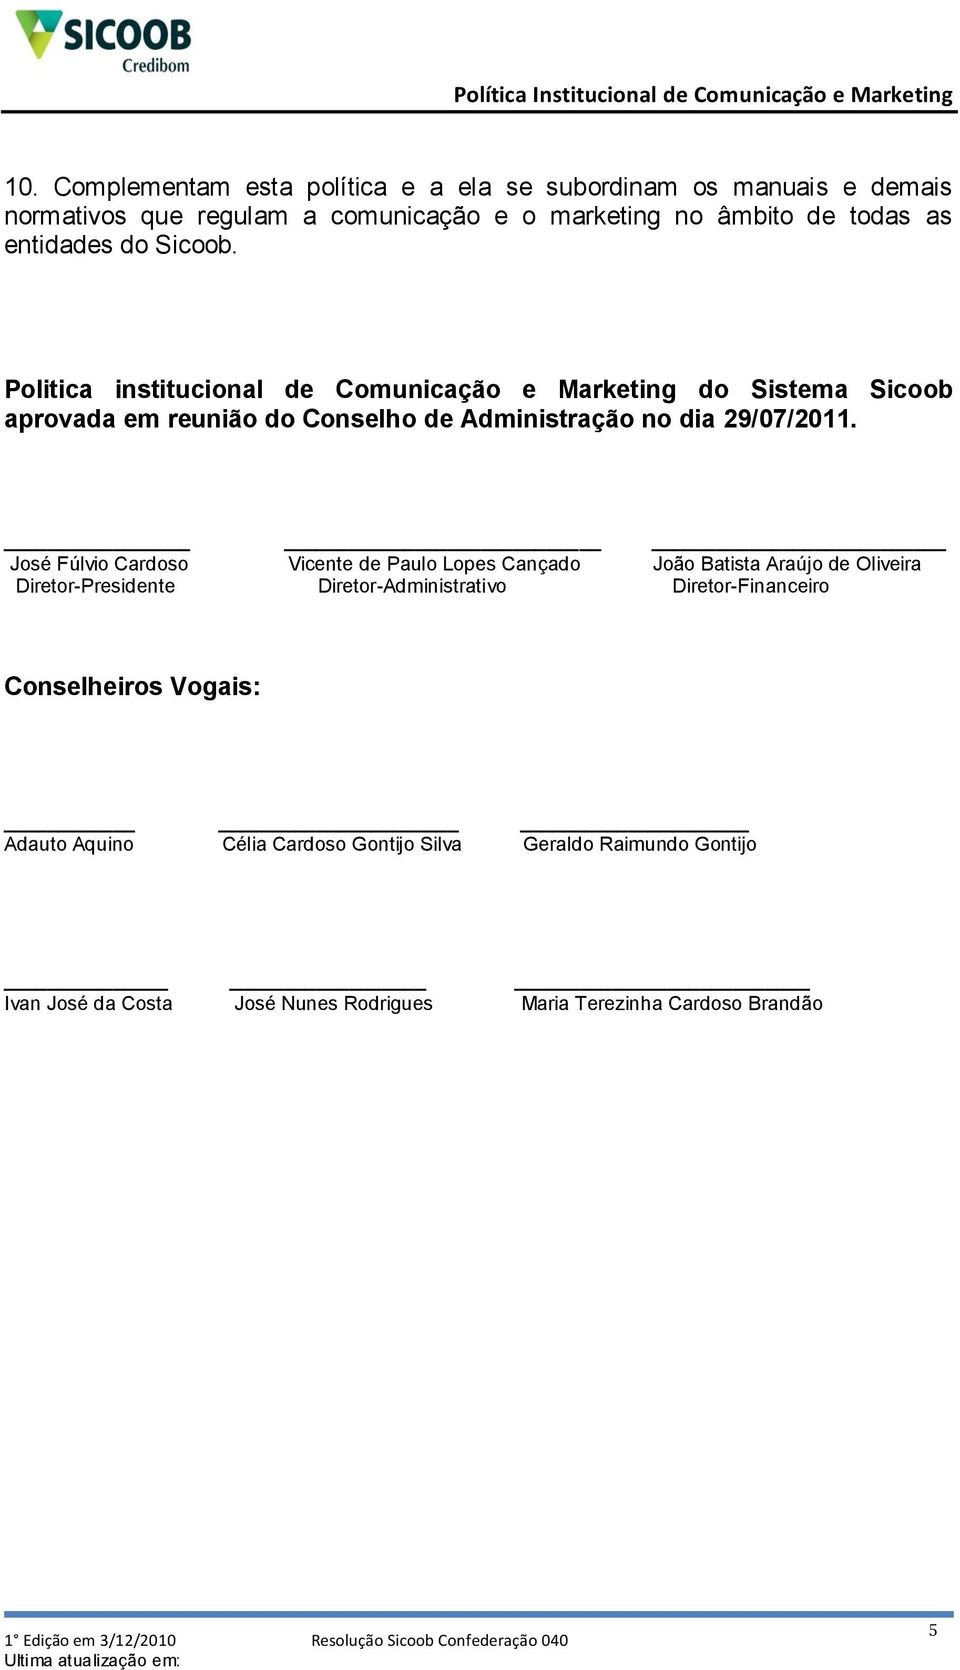 Politica institucional de Comunicação e Marketing do Sistema Sicoob aprovada em reunião do Conselho de Administração no dia 29/07/2011.